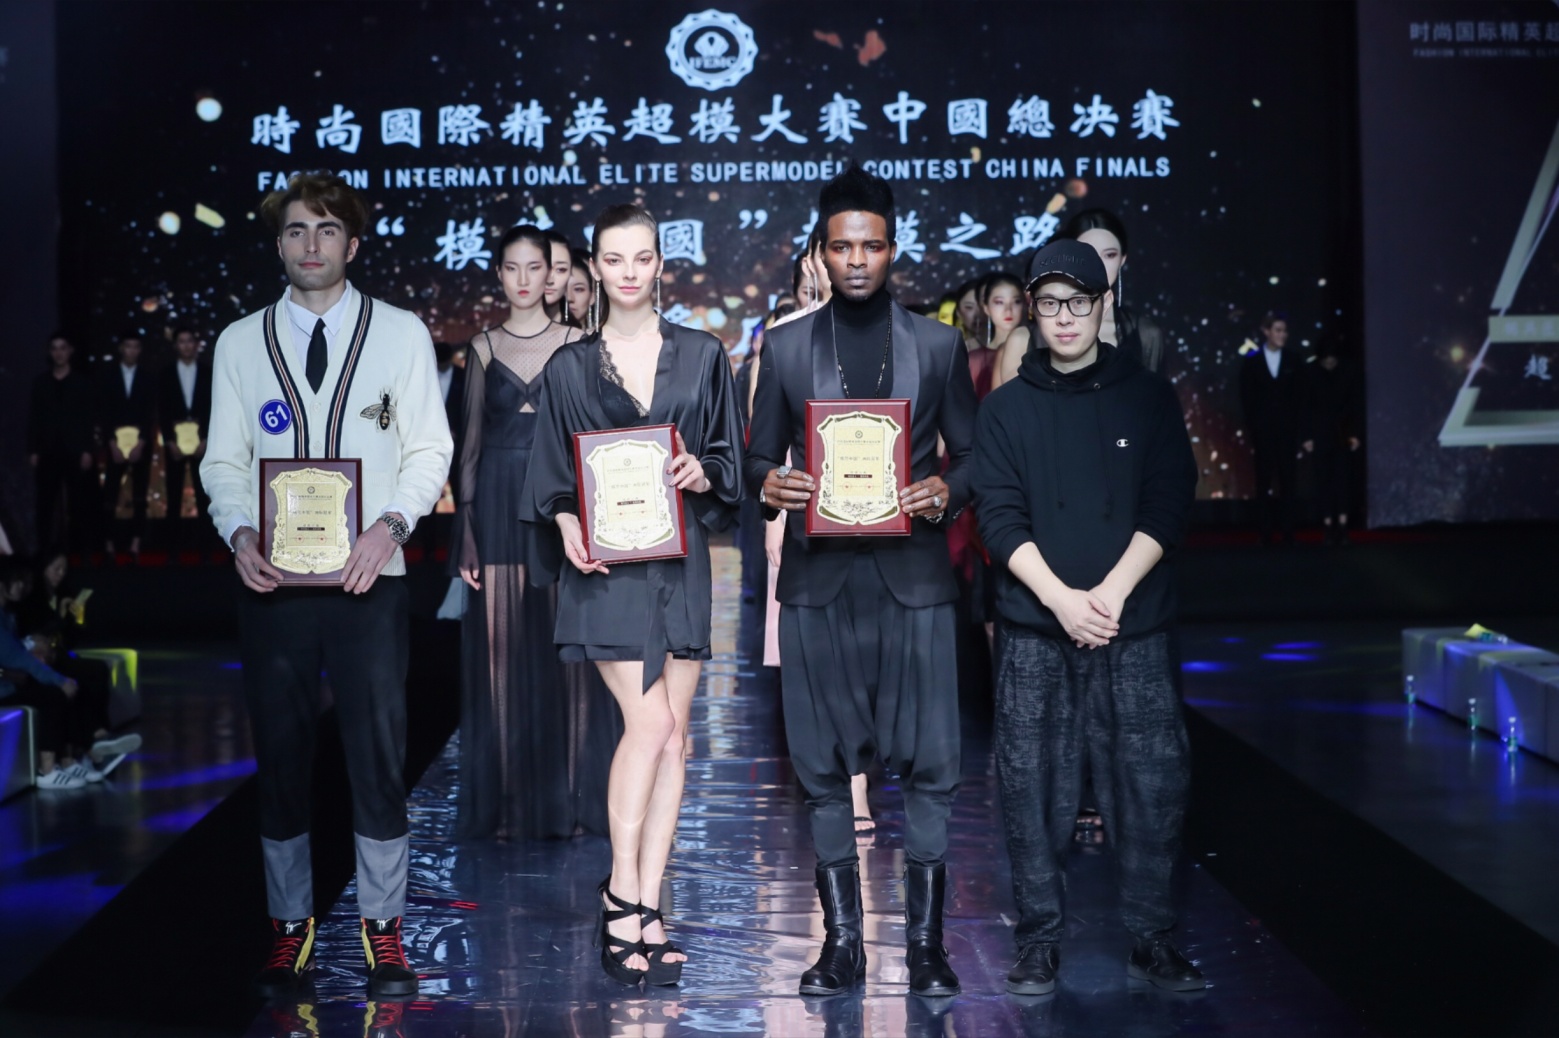 "模范中国"2018时尚国际精英超模大赛中国总决赛